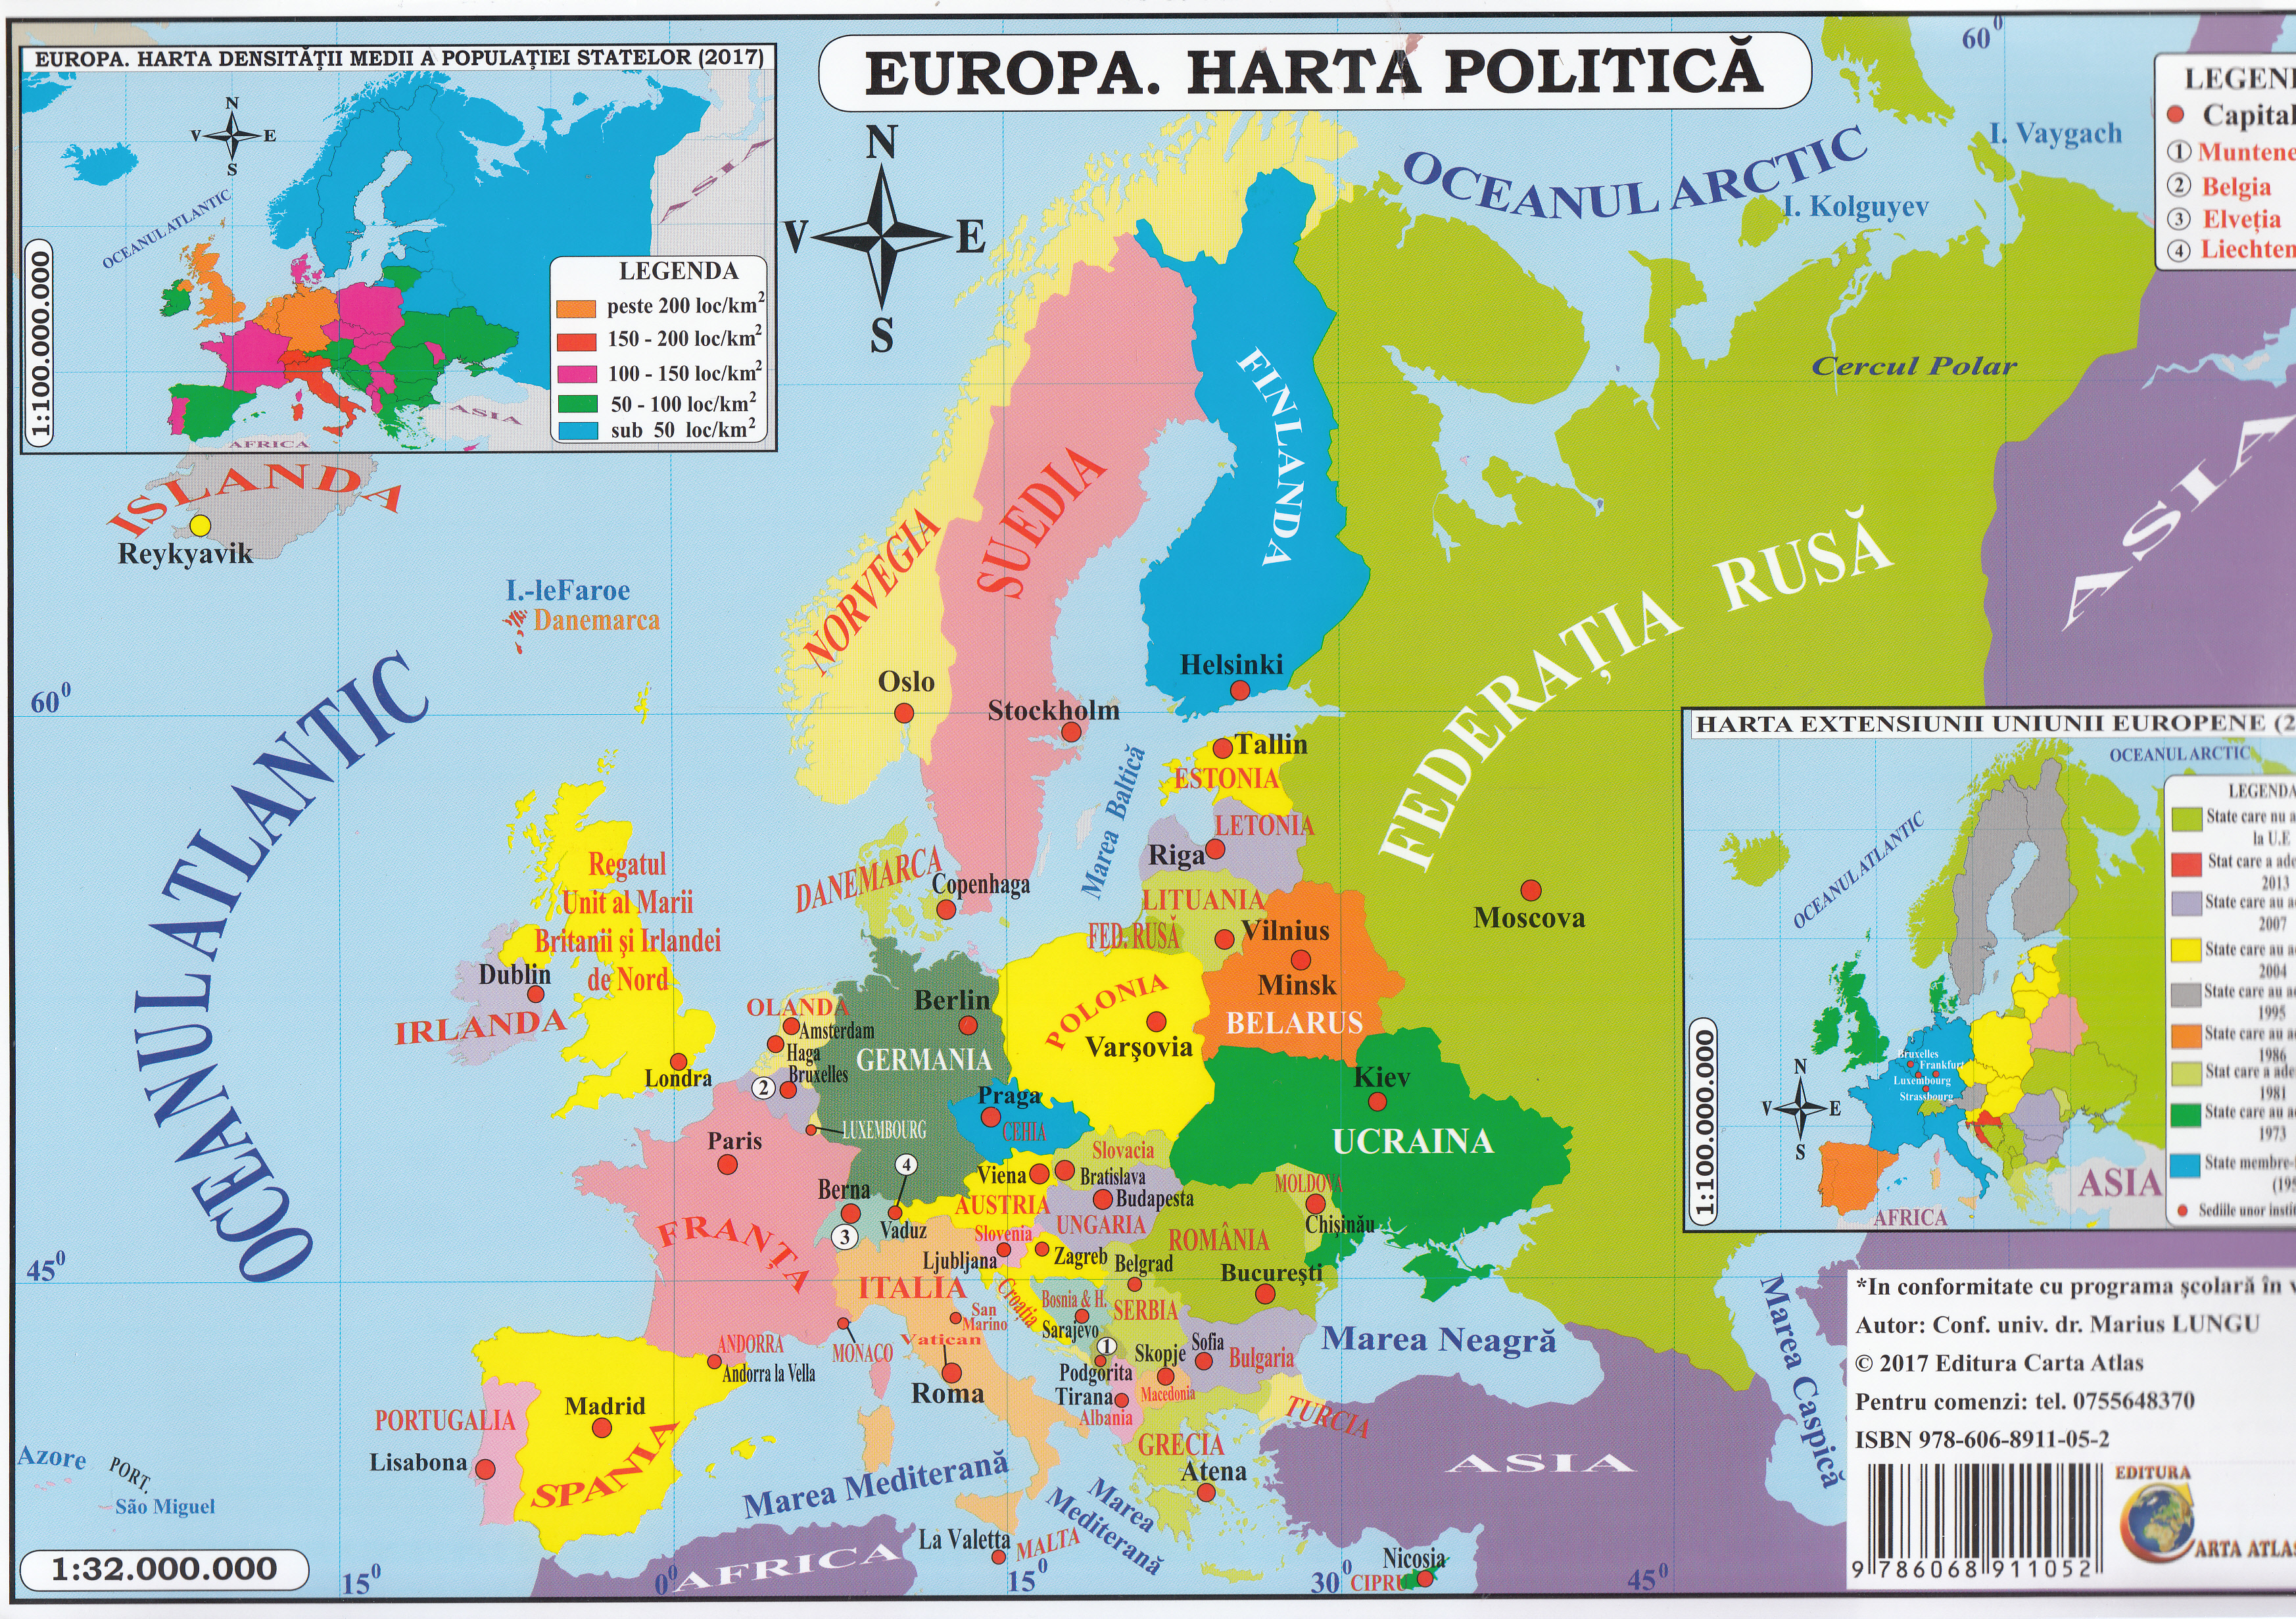 Harta Europa Politica + Fizica (pliata)